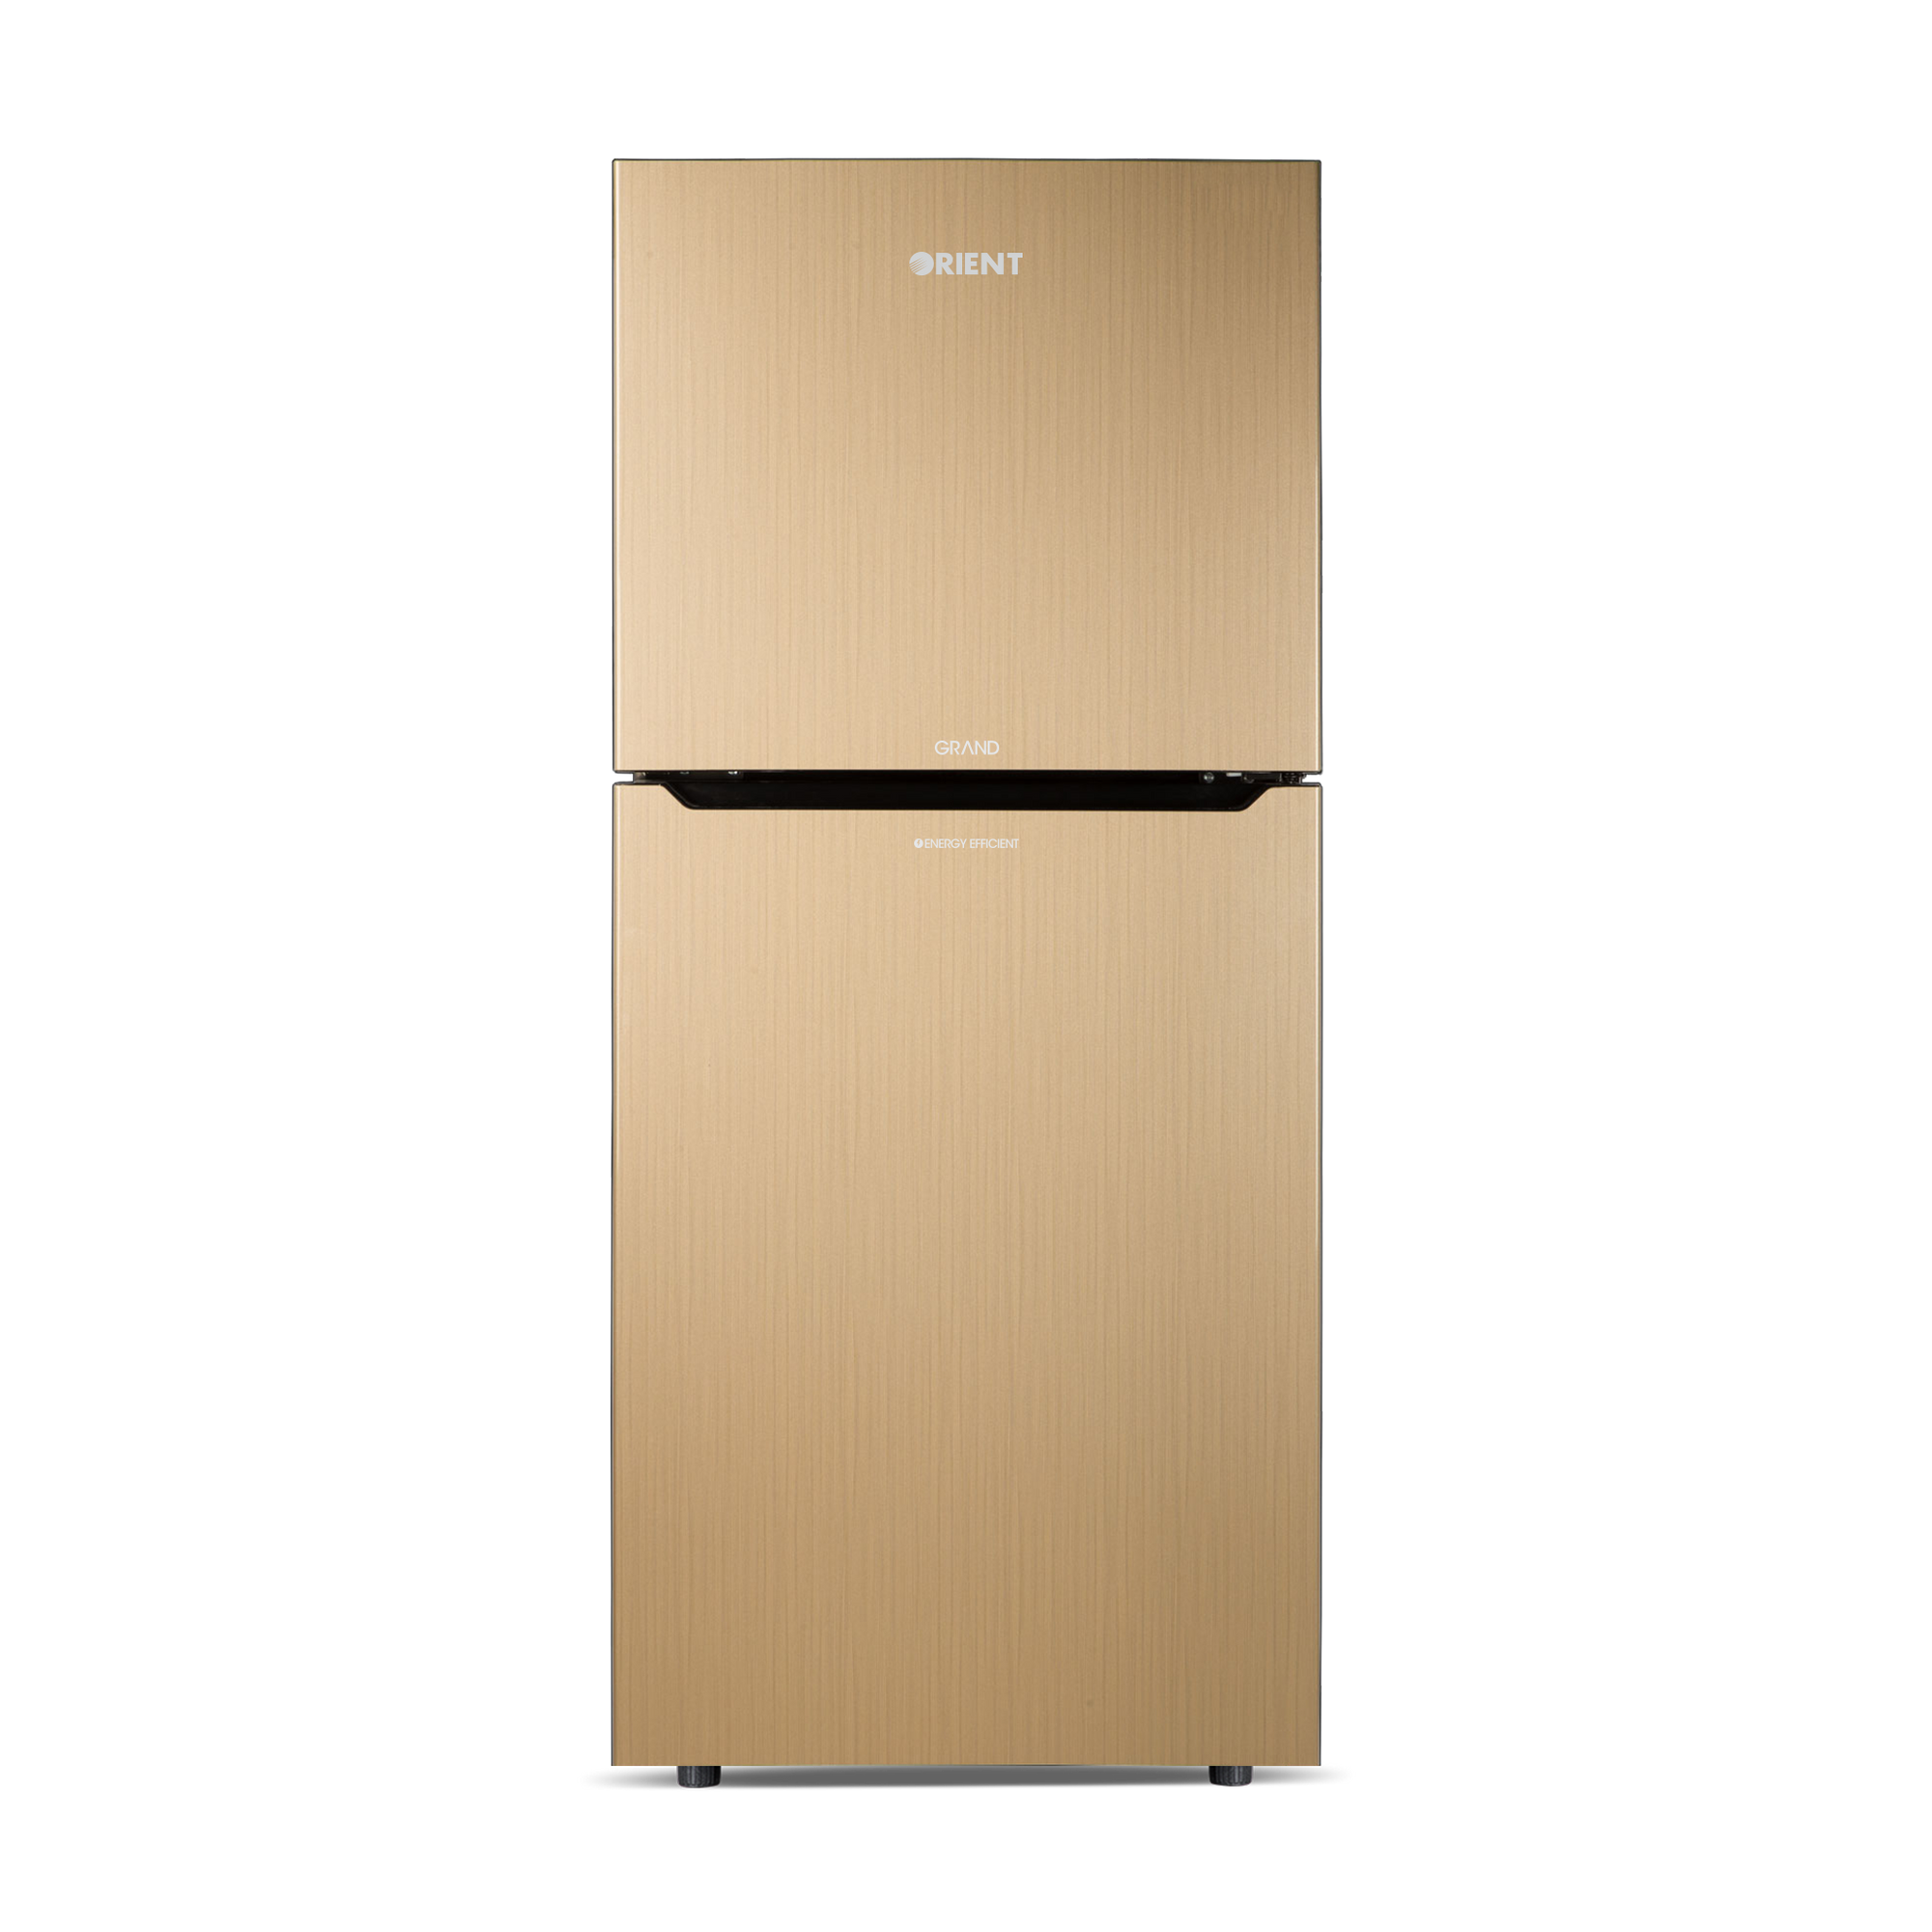 Orient Refrigerator Double Door - 545H Grand VCM